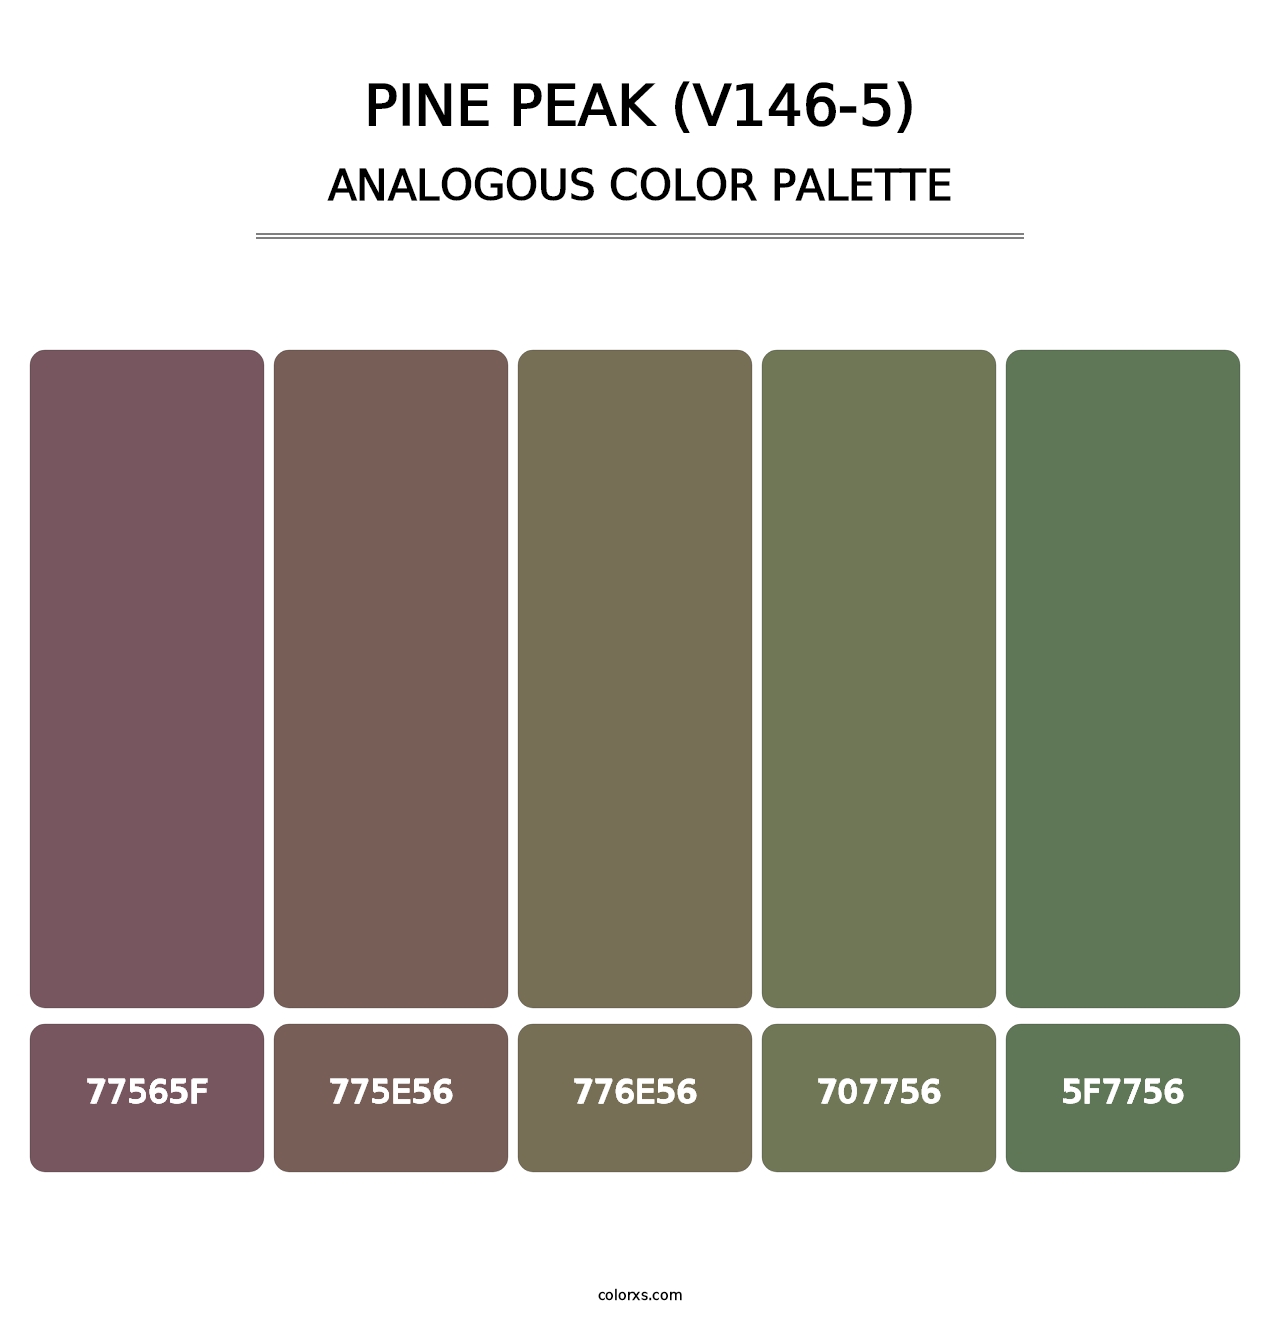 Pine Peak (V146-5) - Analogous Color Palette